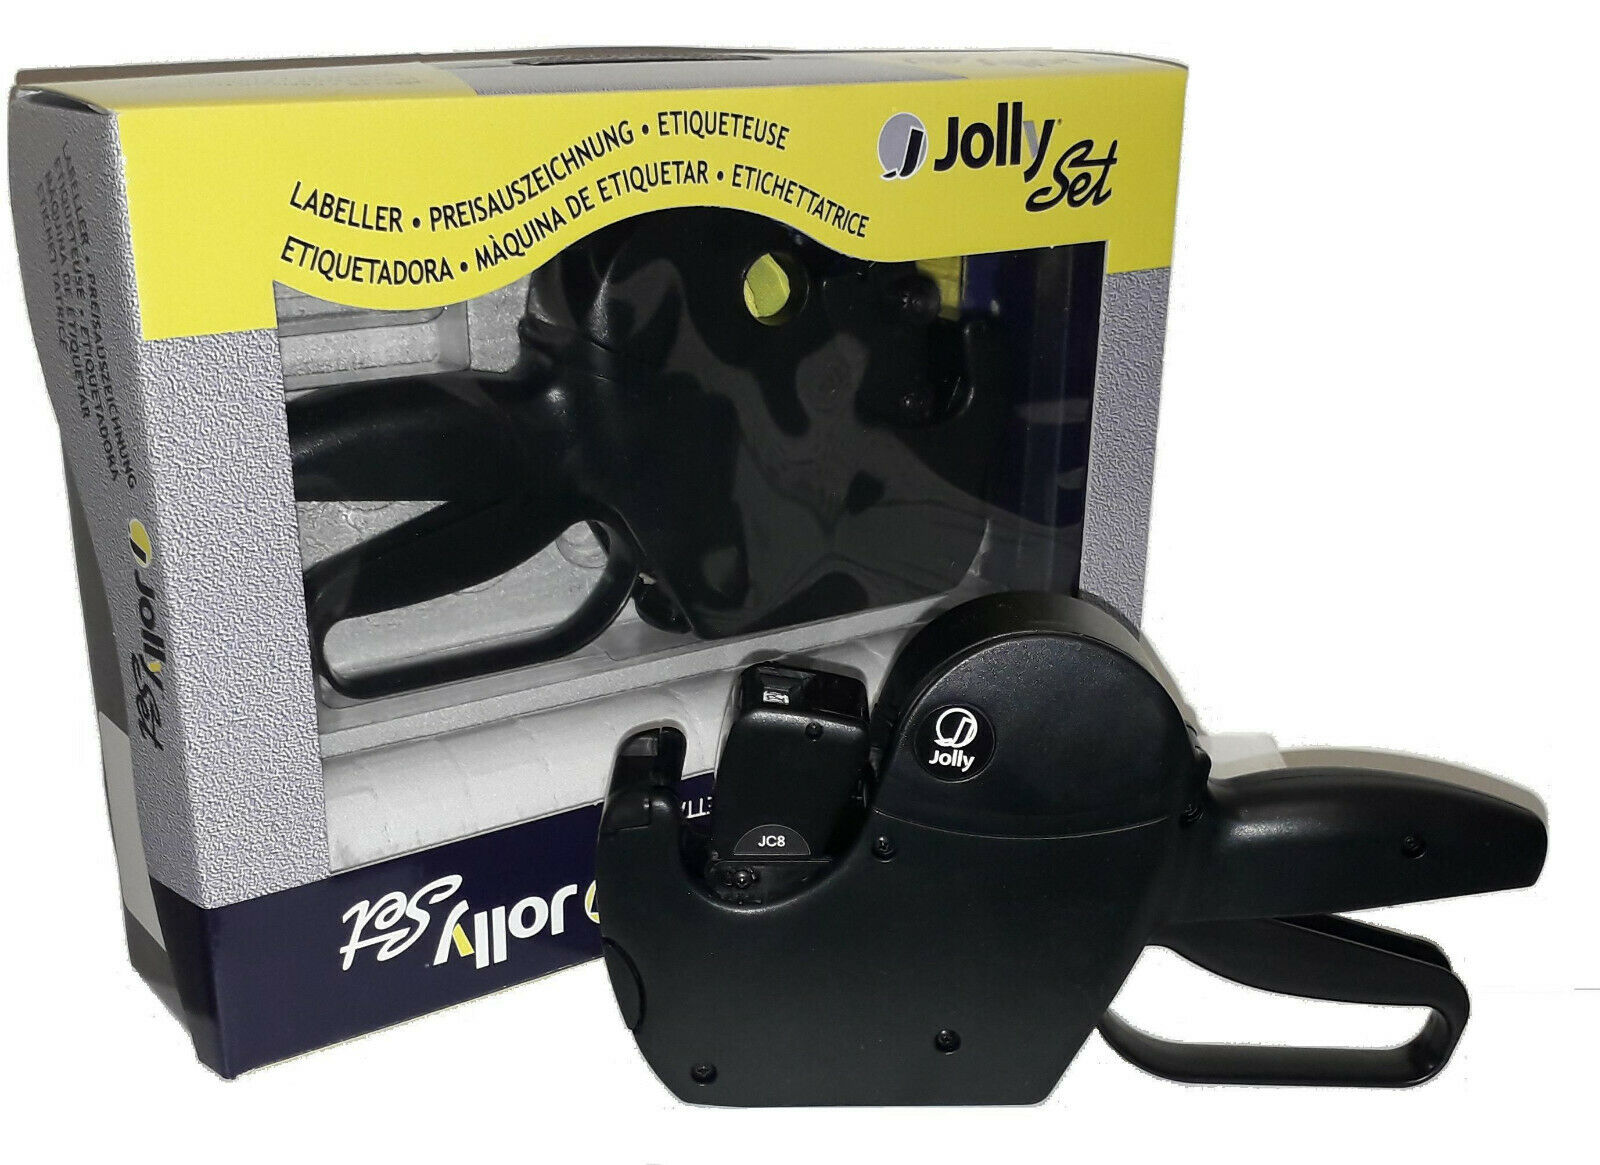 Prezzatrice Jolly JC8 - Kit completo di tamponi ed etichette